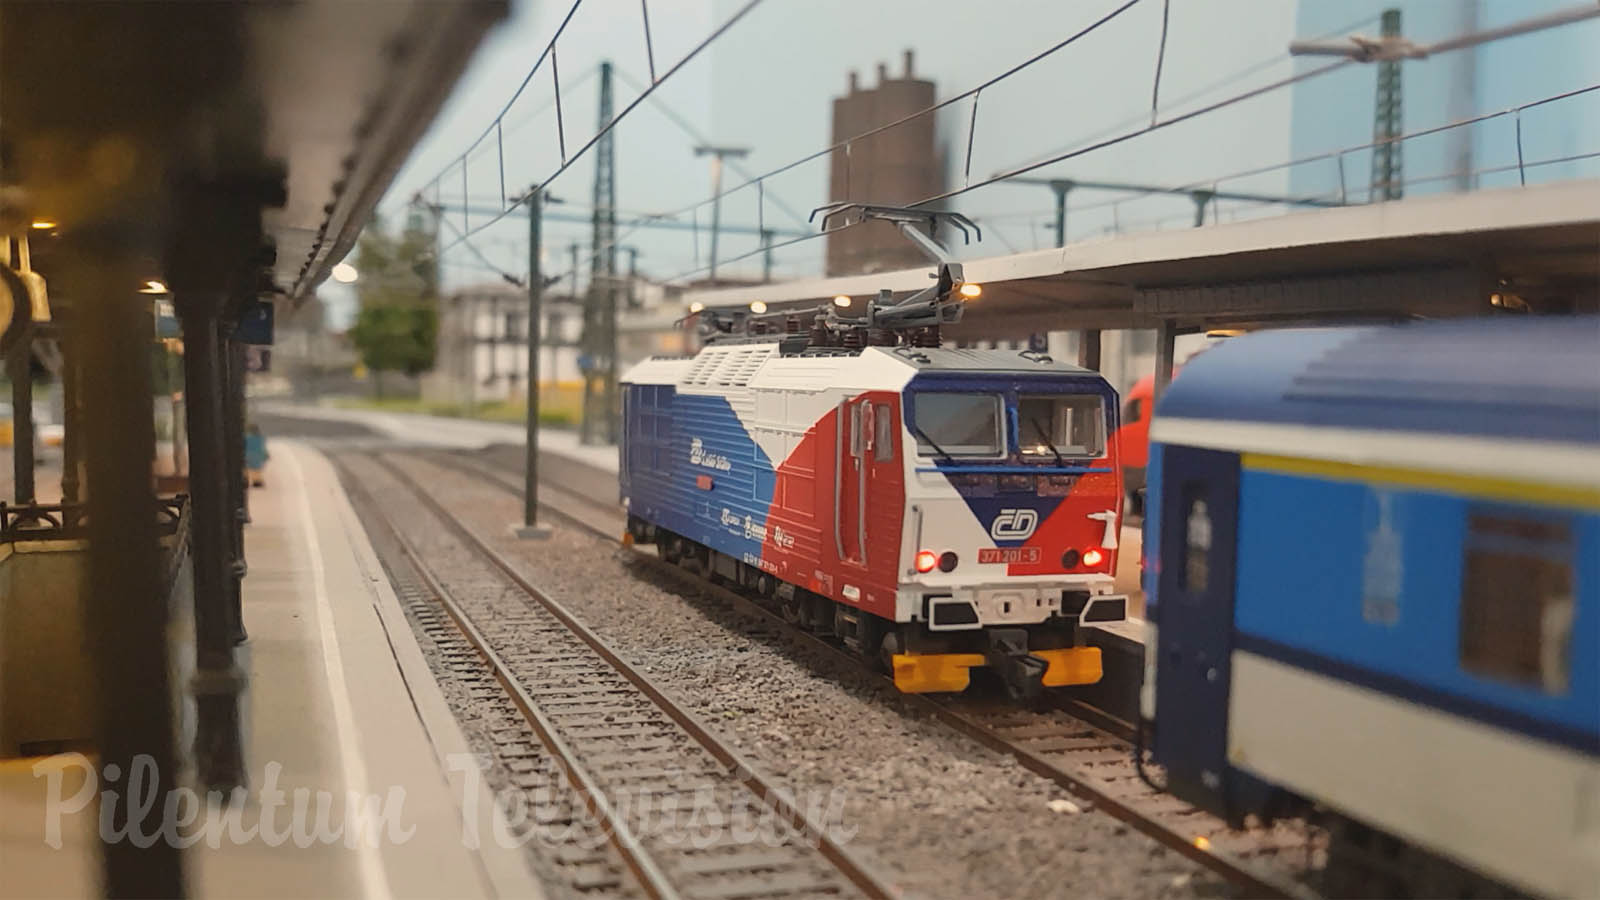 Modelos de trenes eléctricos y locomotoras en escala HO de la República Checa